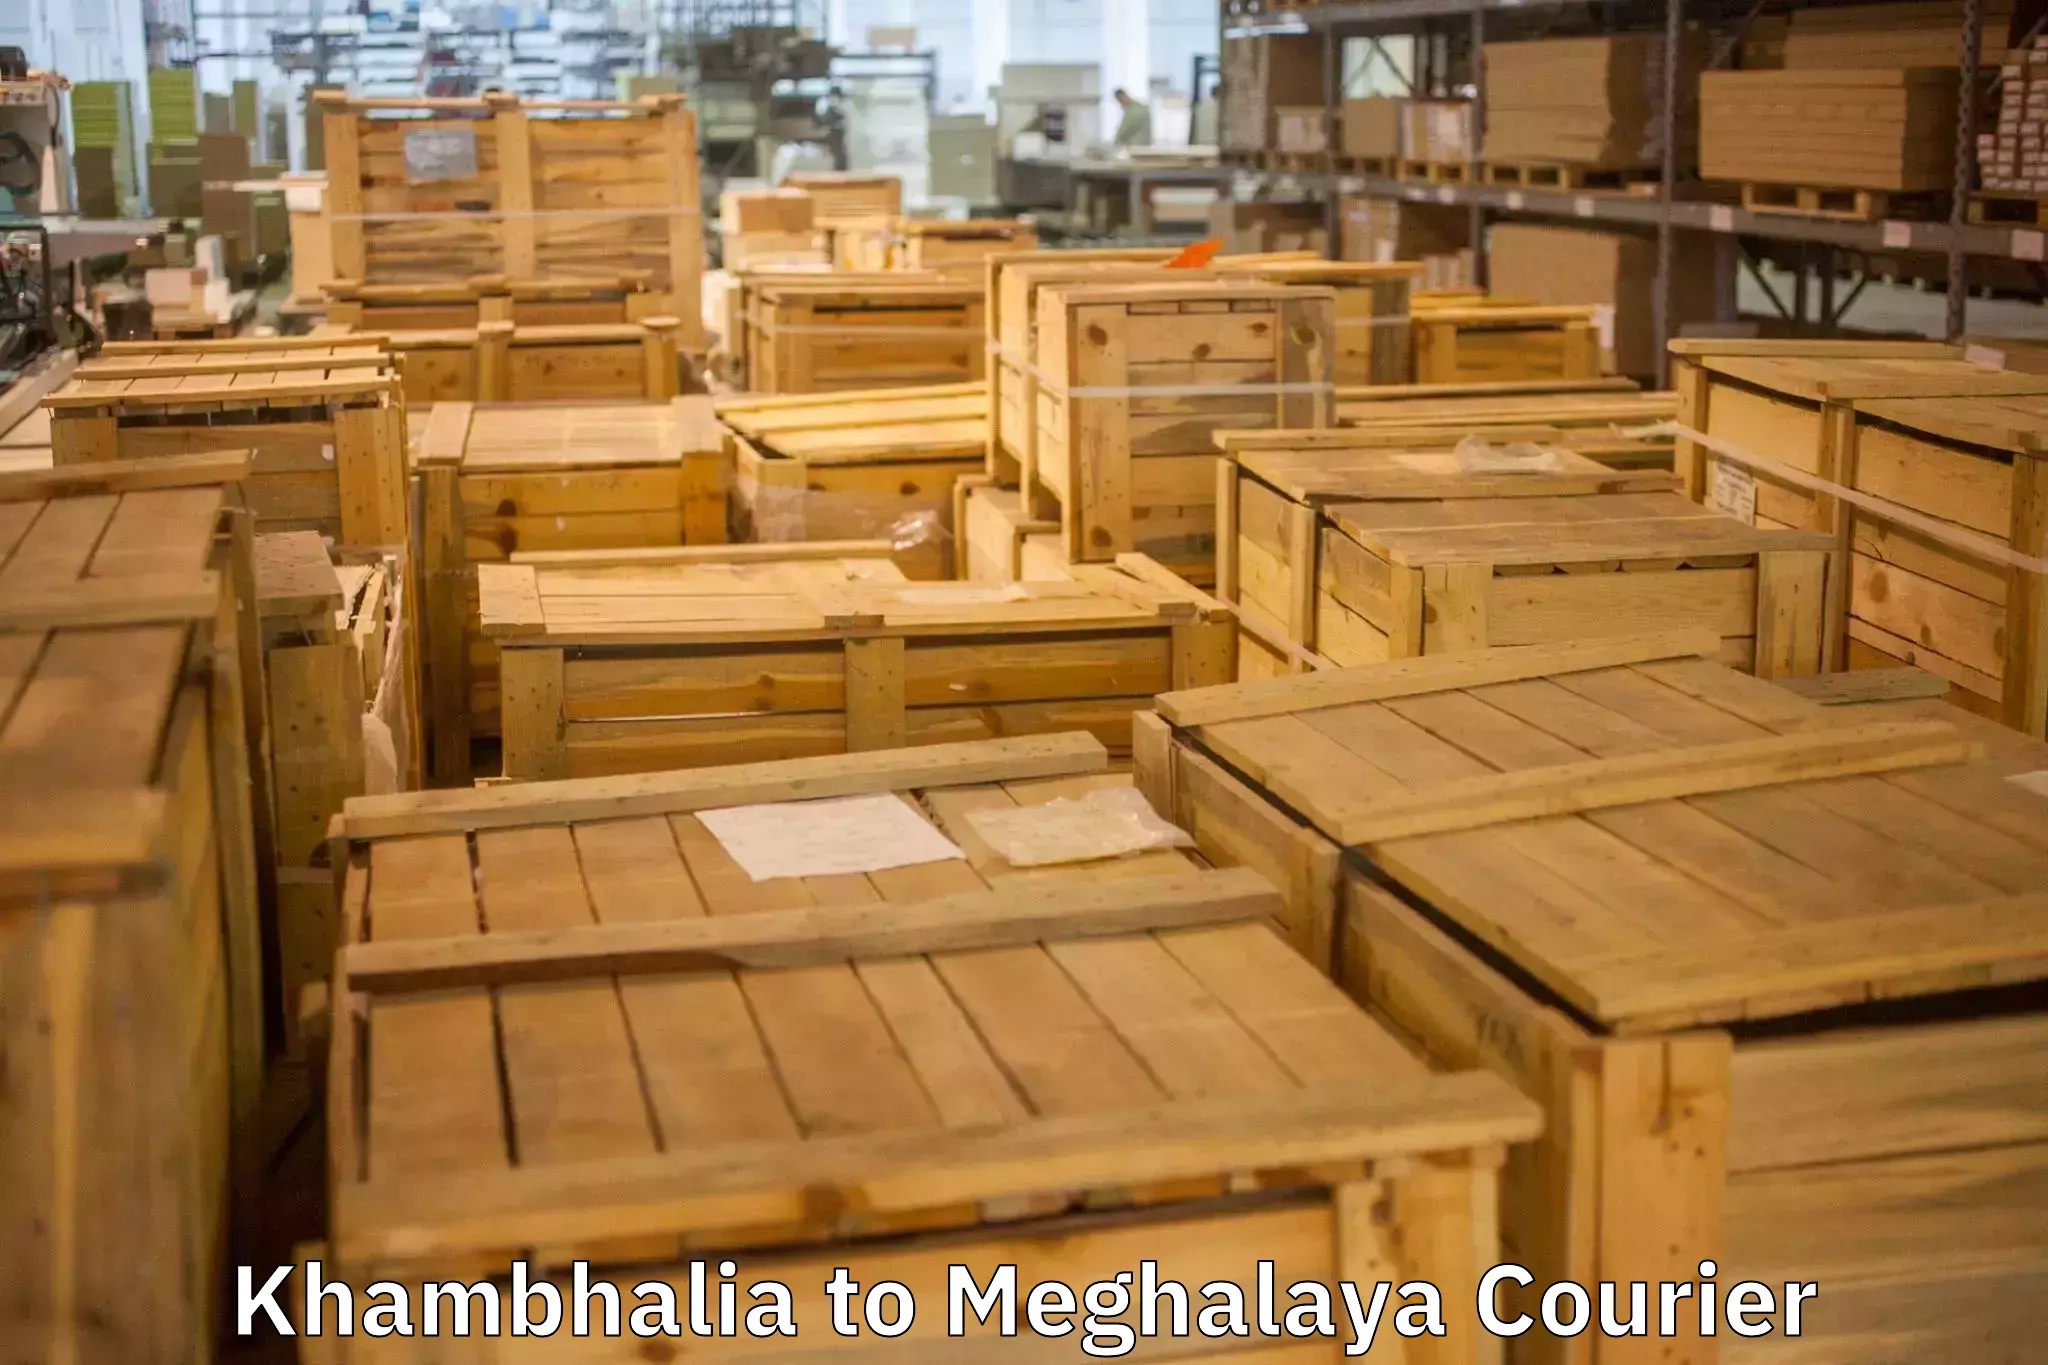 Cost-effective moving options Khambhalia to Meghalaya